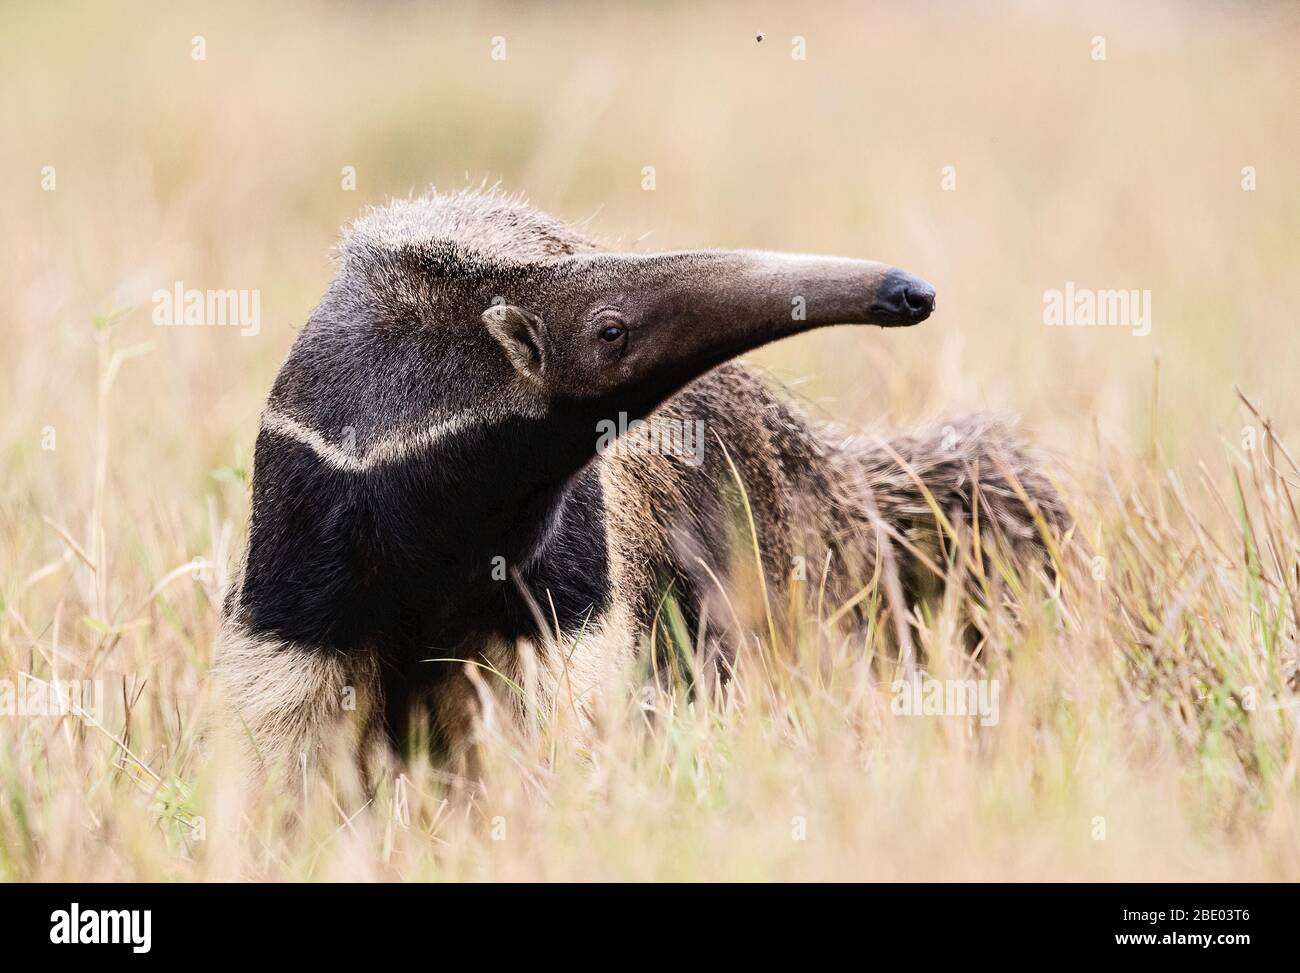 Vue sur l'anteater géant sur la prairie, Pantanal, Brésil Banque D'Images